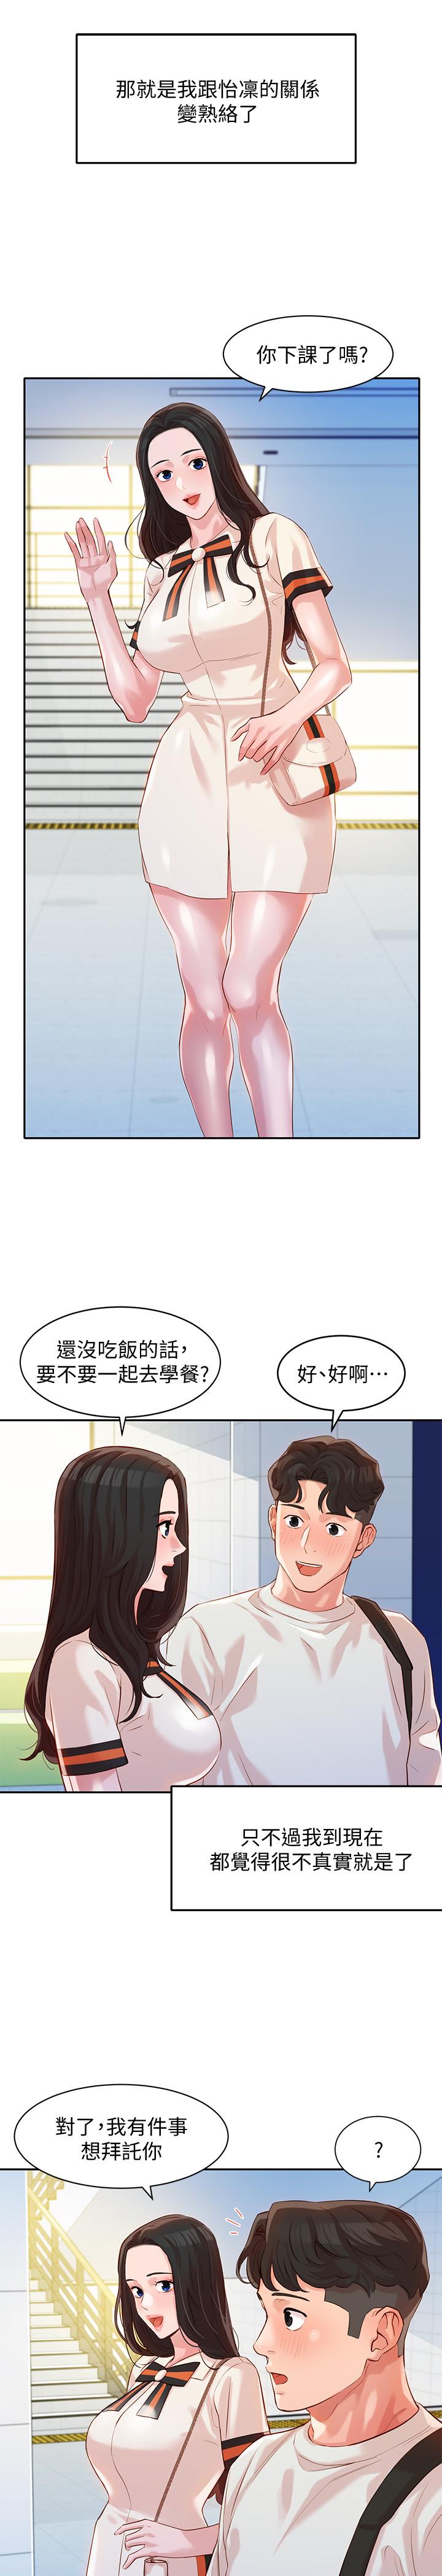 韩国污漫画 女神寫真 第12话-穿运动legging拍照 24